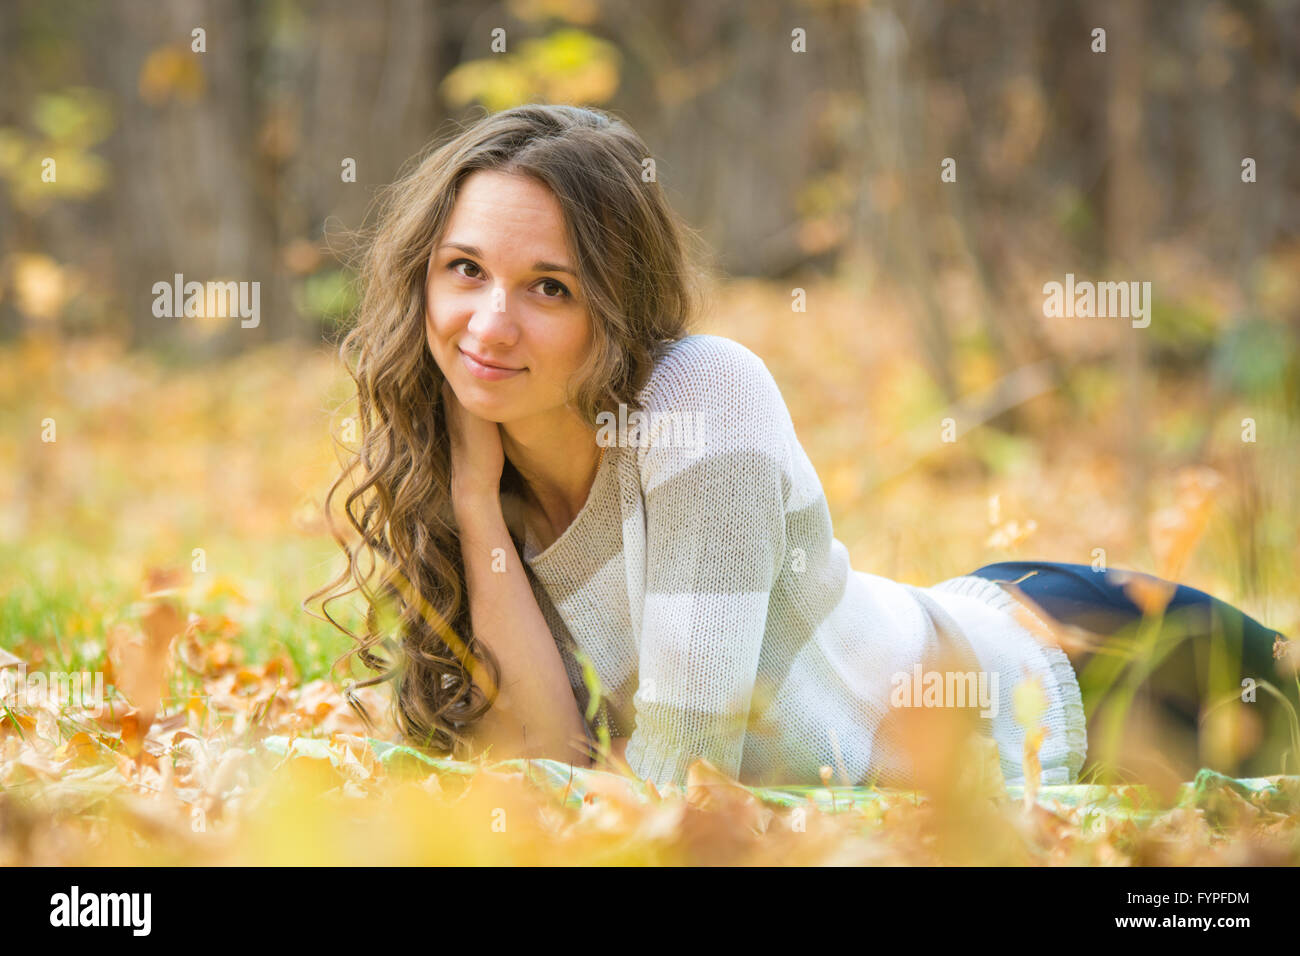 Belle jeune fille se trouve sur le fléau dans le jaune des feuilles mortes Banque D'Images